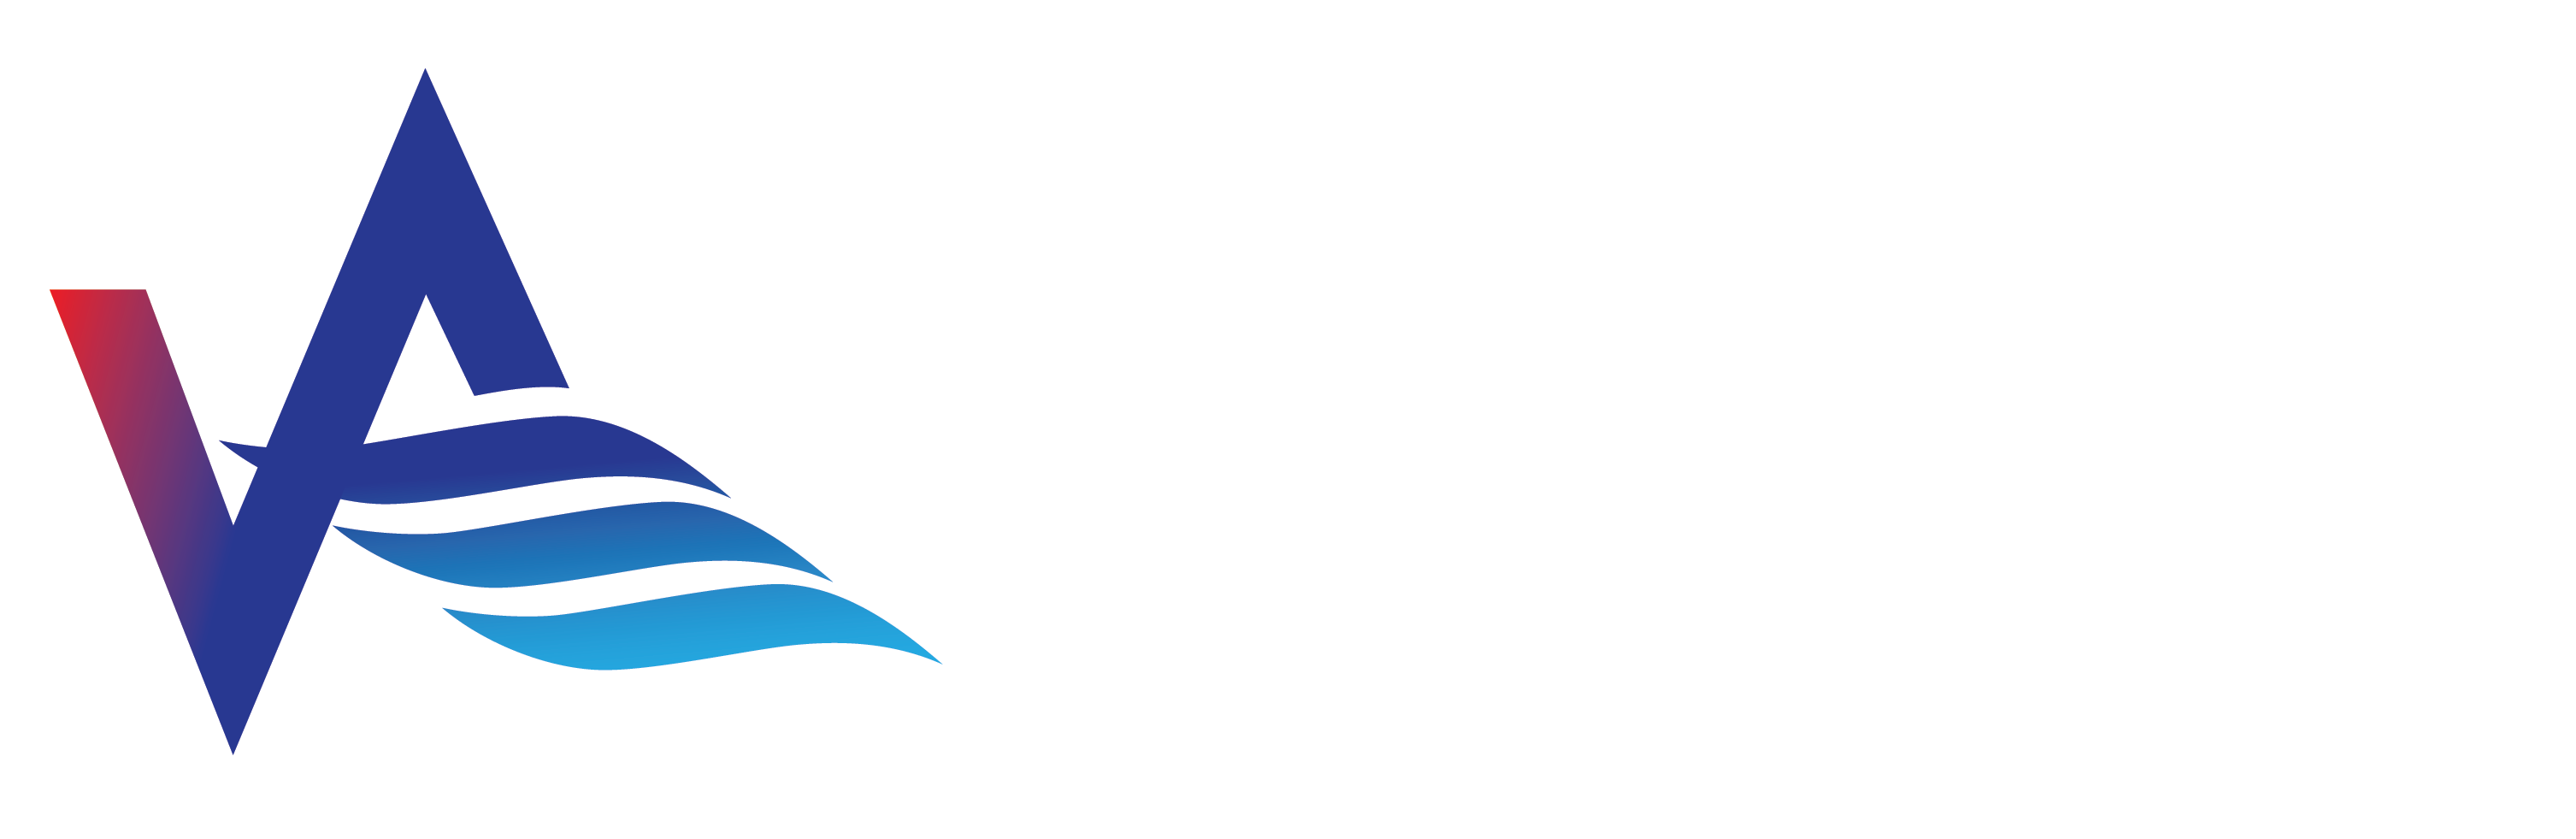 vital-air-energy-left-4-color-artwork-white-lettering-logo